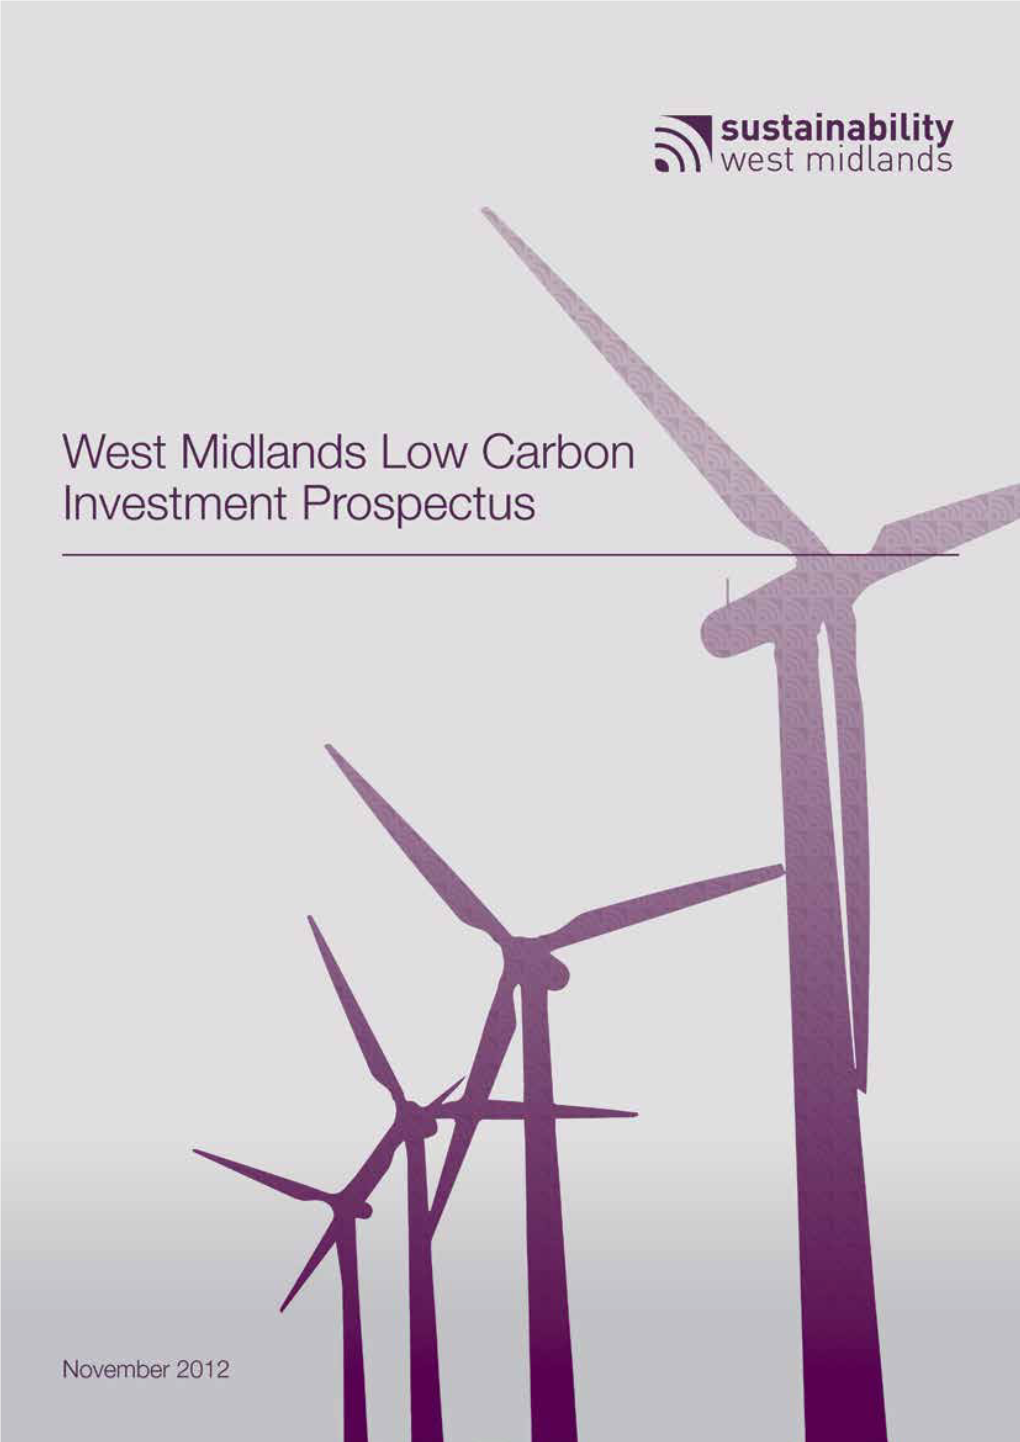 SWM Low Carbon Investment Prospectus